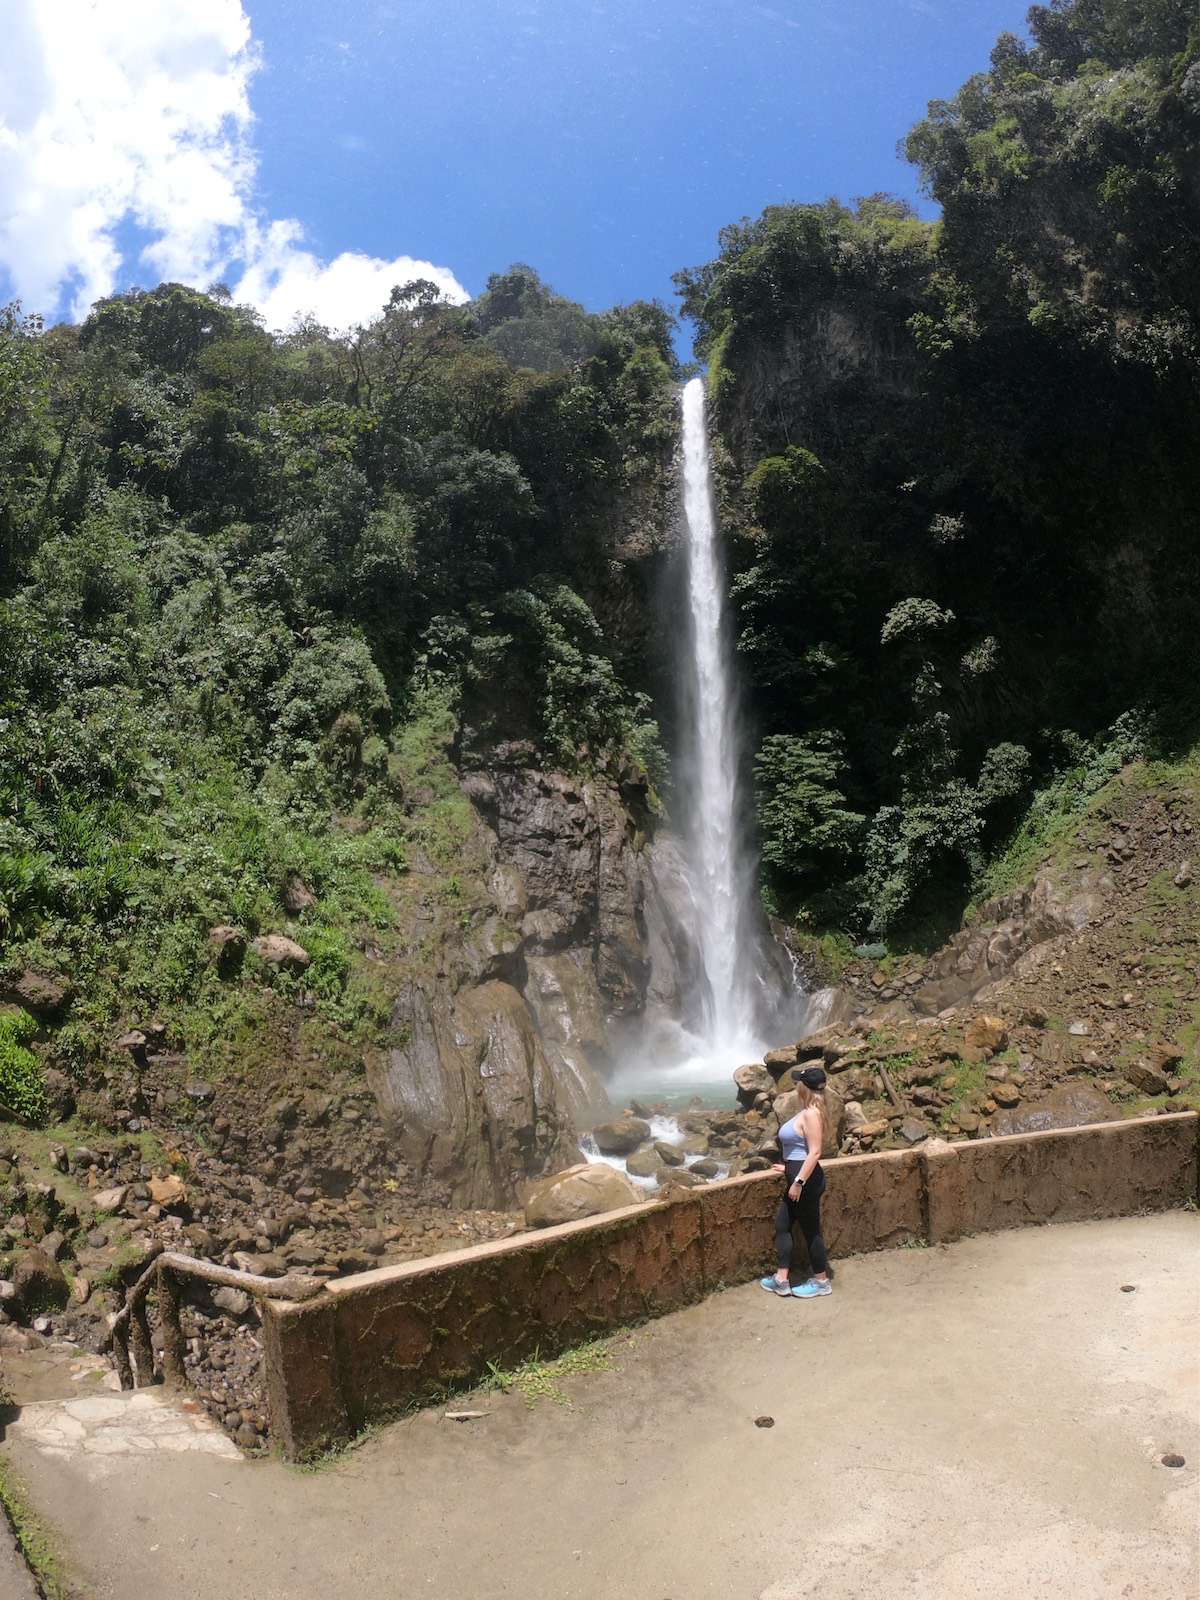 Views of Machay Waterfall in Banos, Ecuador